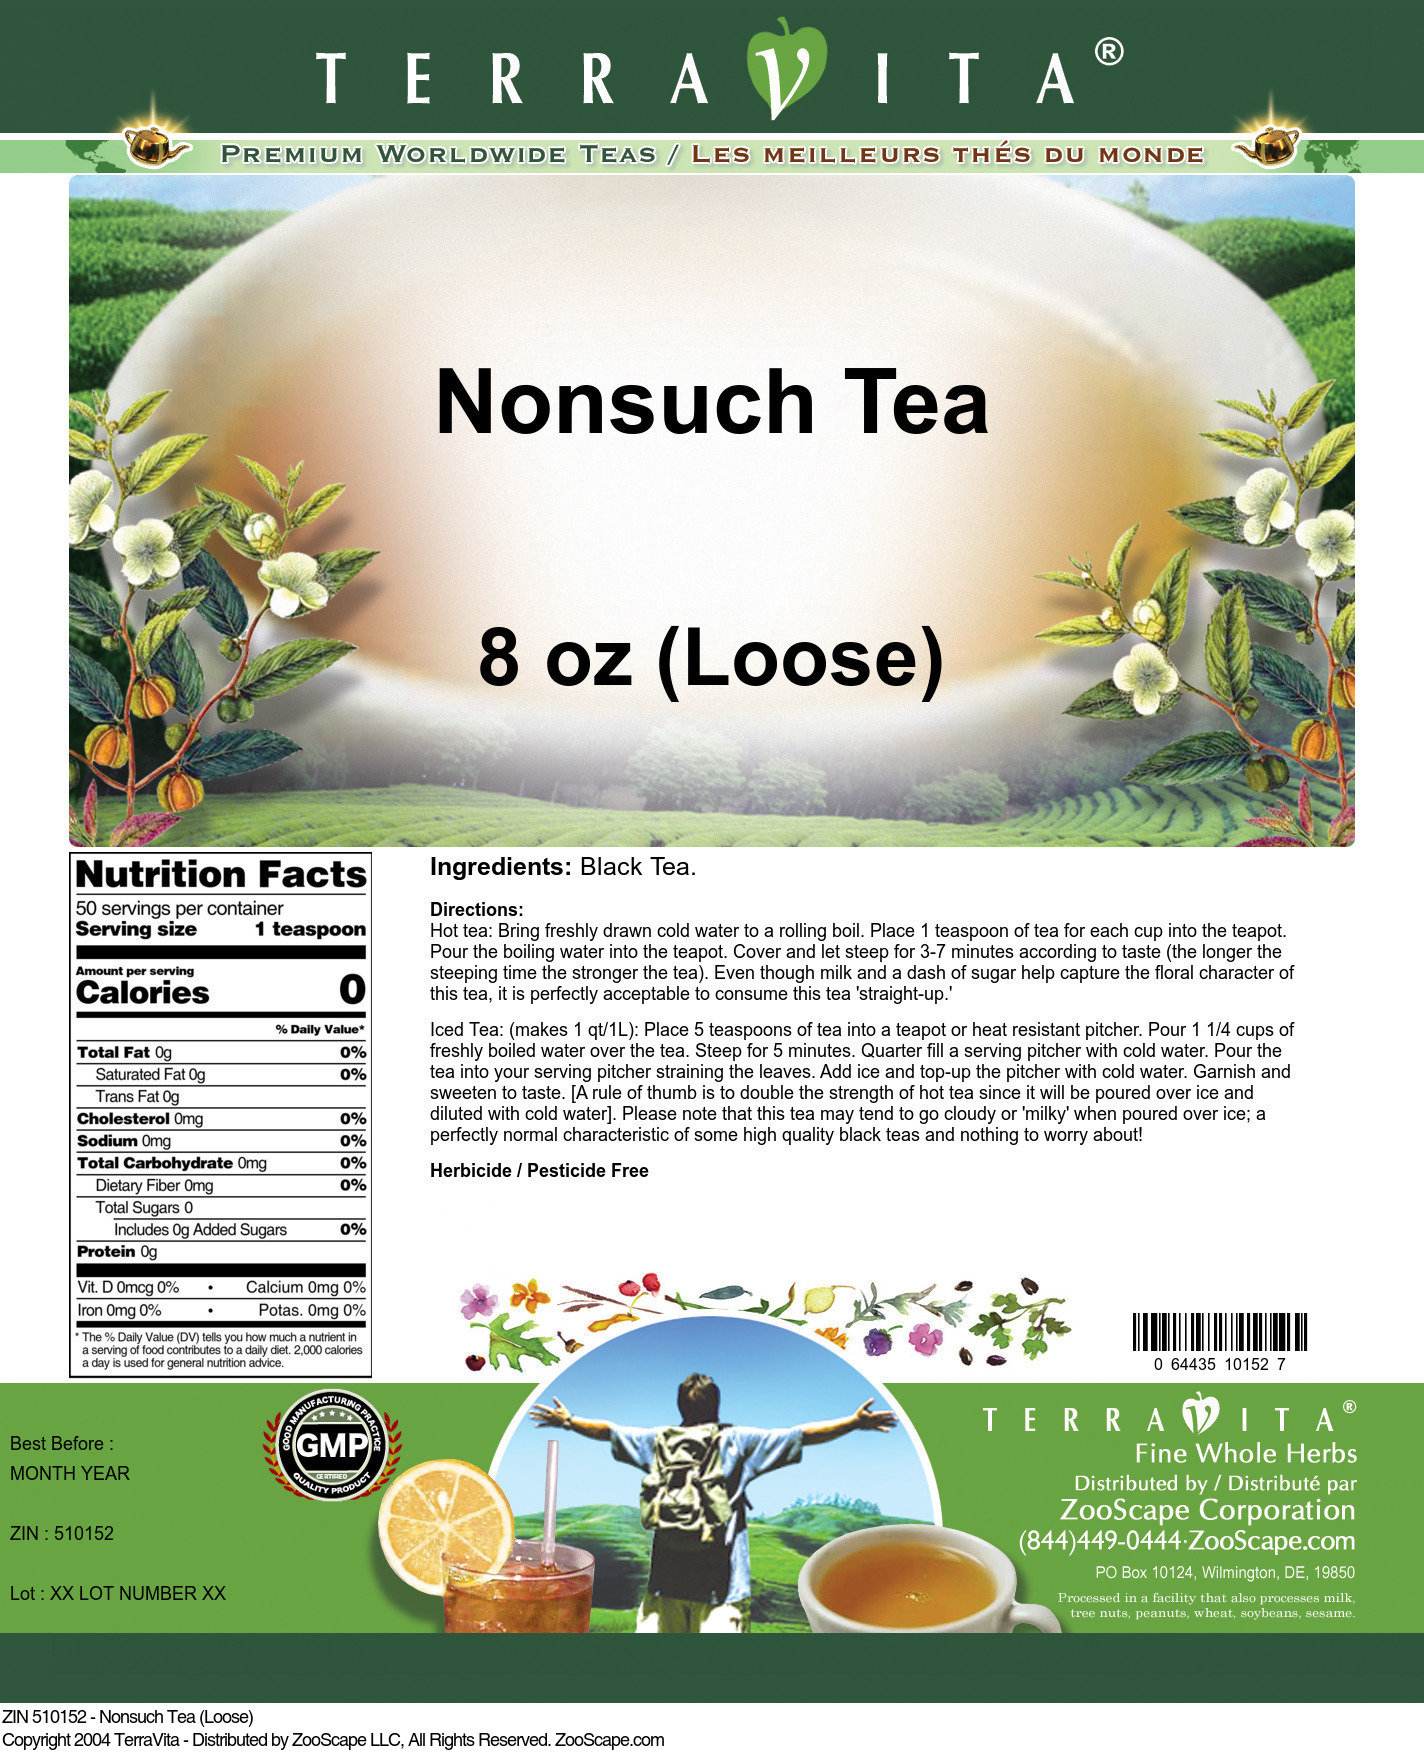 Nonsuch Tea (Loose) - Label